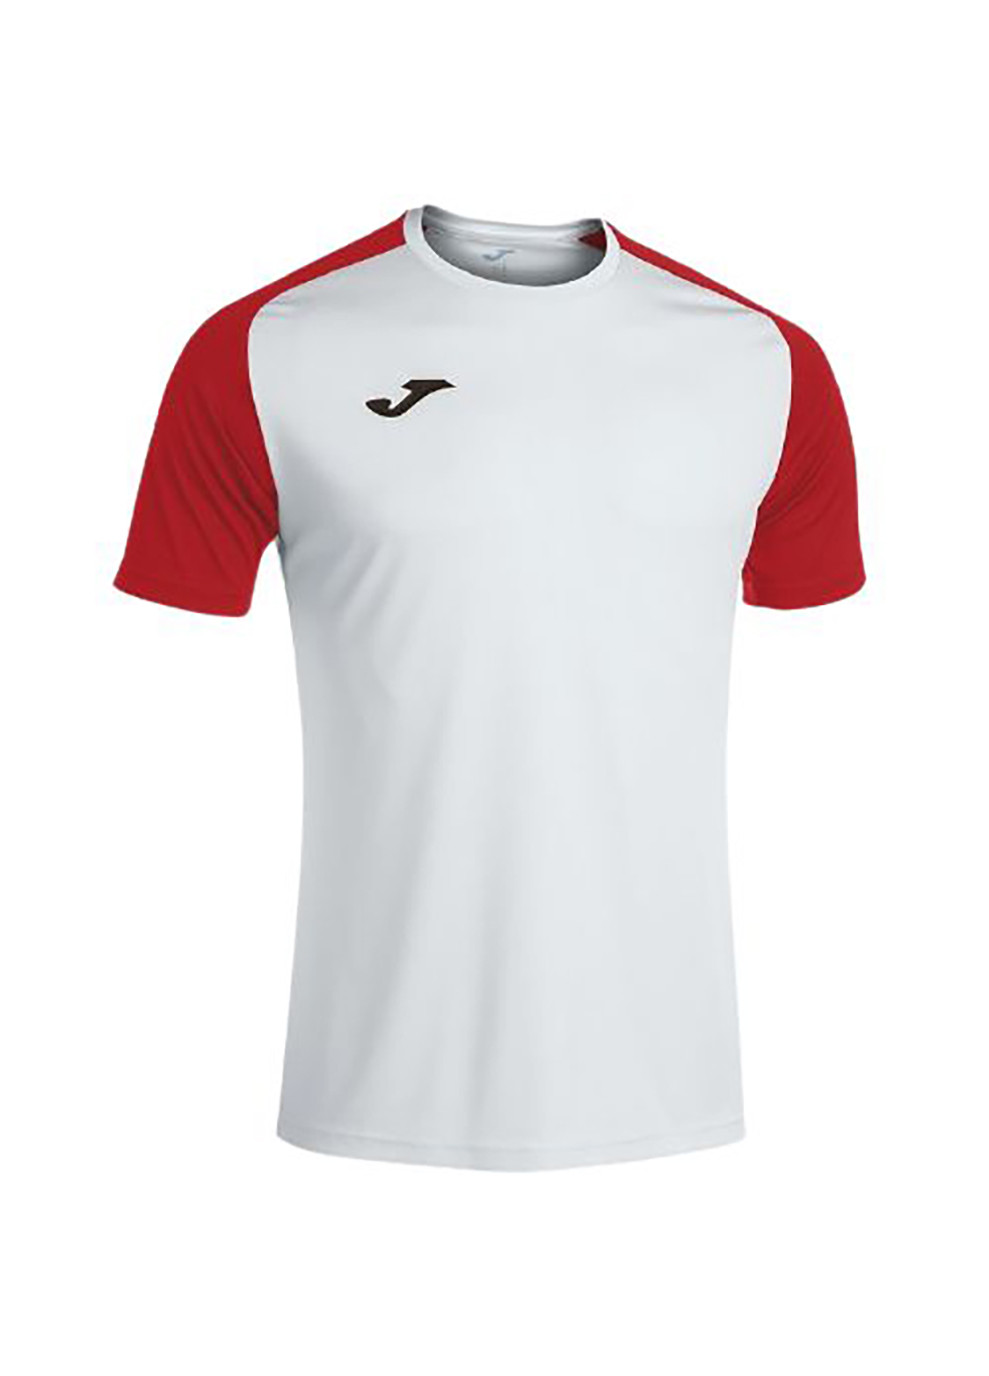 Біла футболка academy iv біло-червоний чол xl Joma